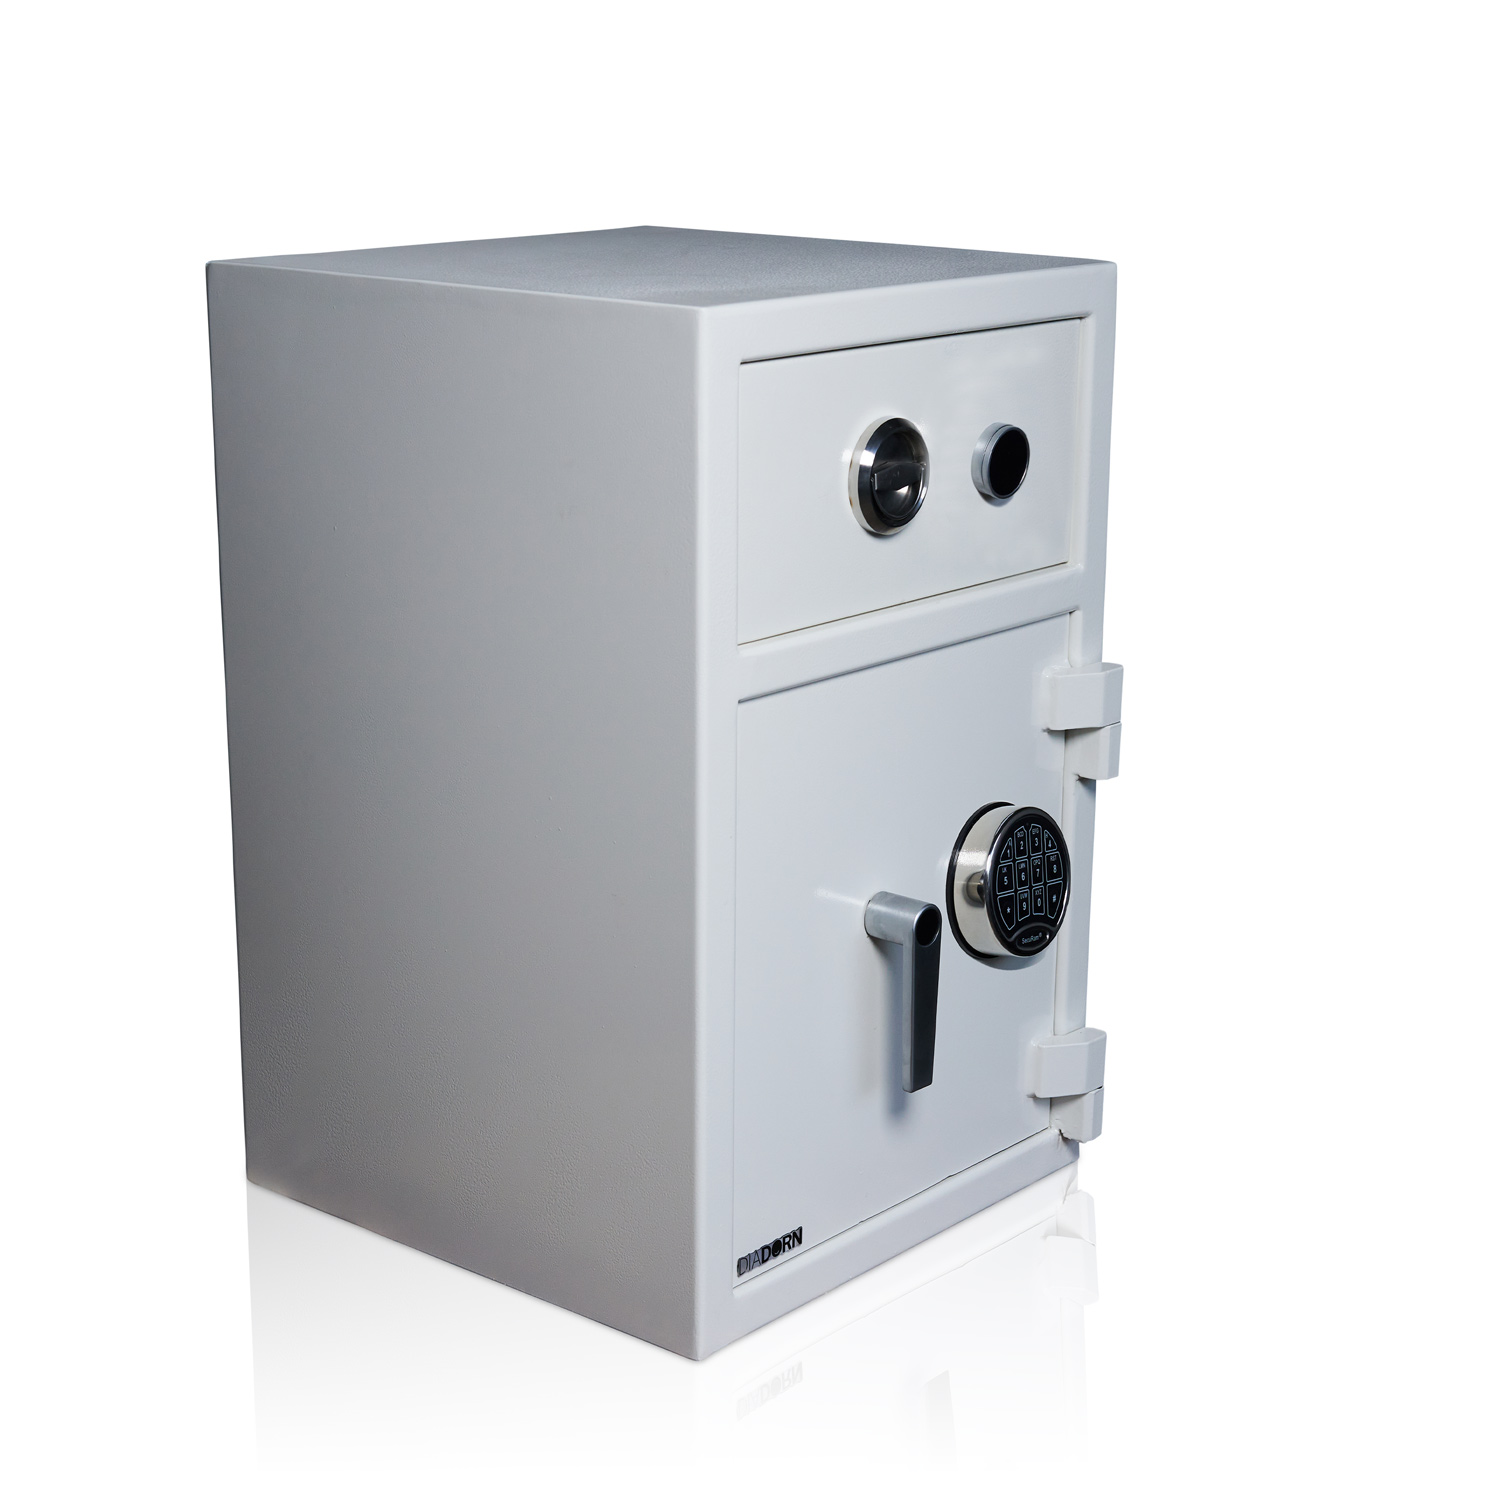 Caja fuerte de depósito con cajón y cerradura de llave | Puerta del cofre con 6 cerrojos y cerradura con código PIN